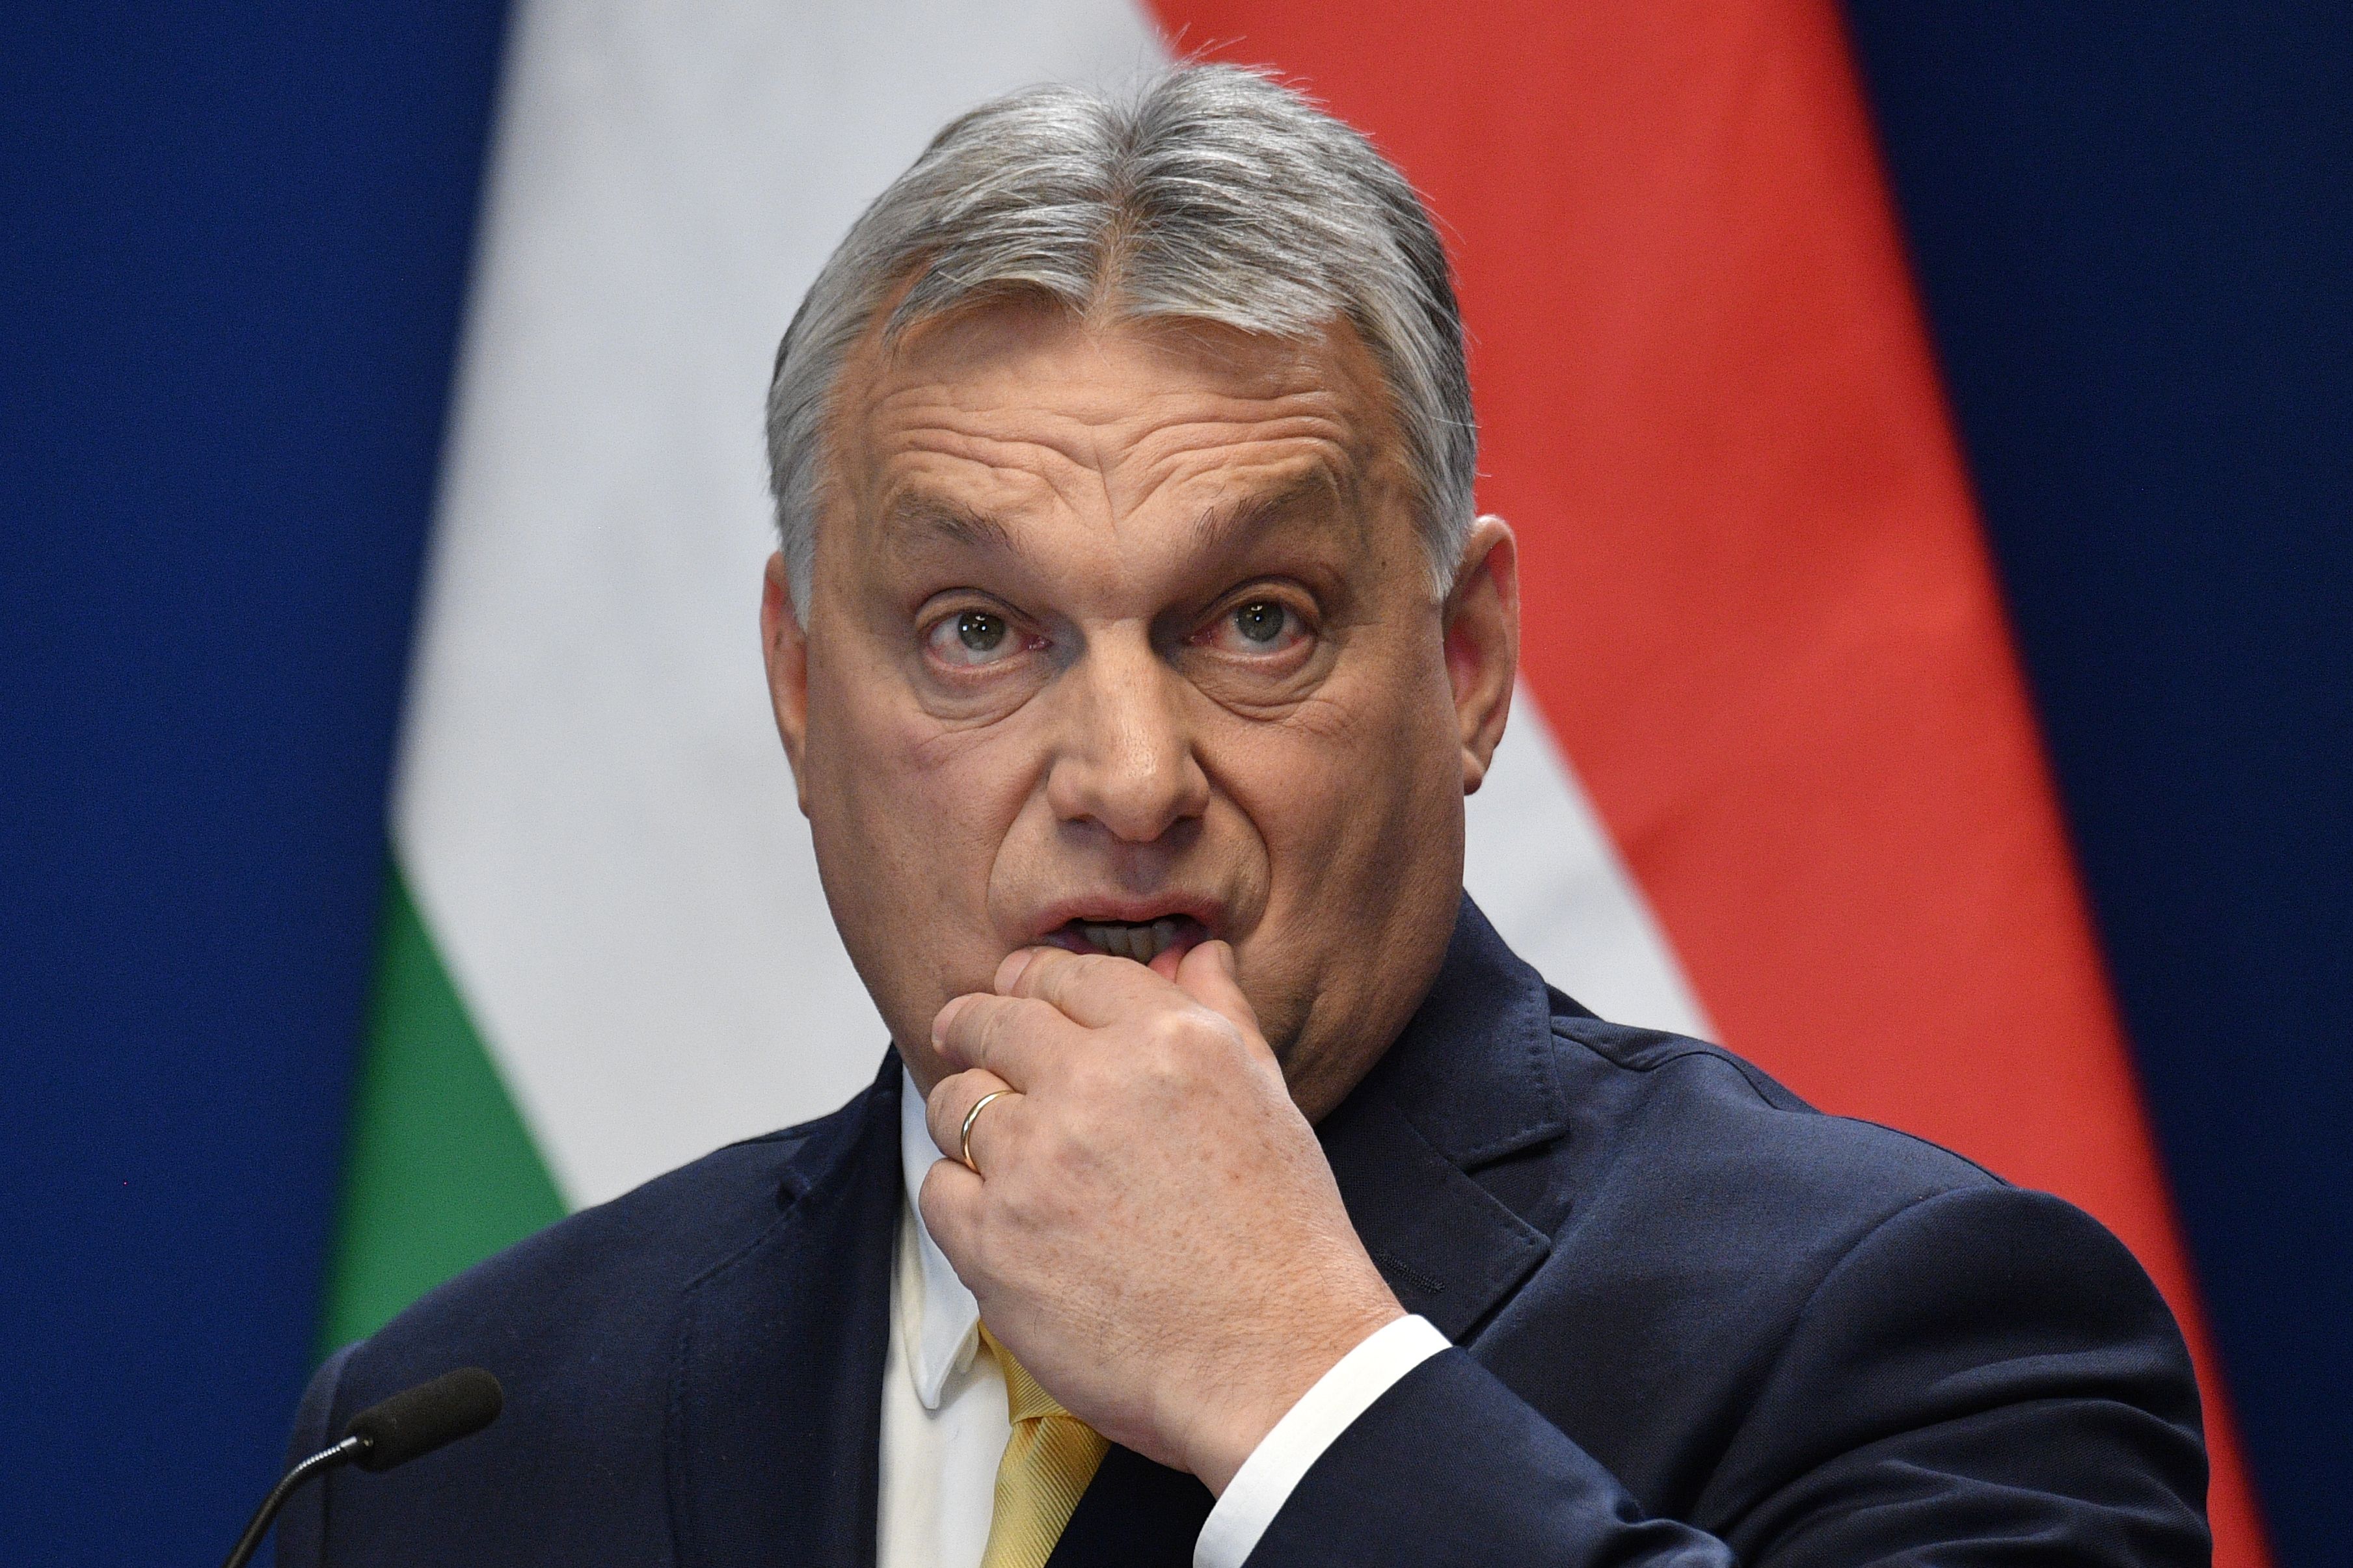 L’Europe est sur le point de décider des troupes de maintien de la paix en Ukraine – Viktor Orbán